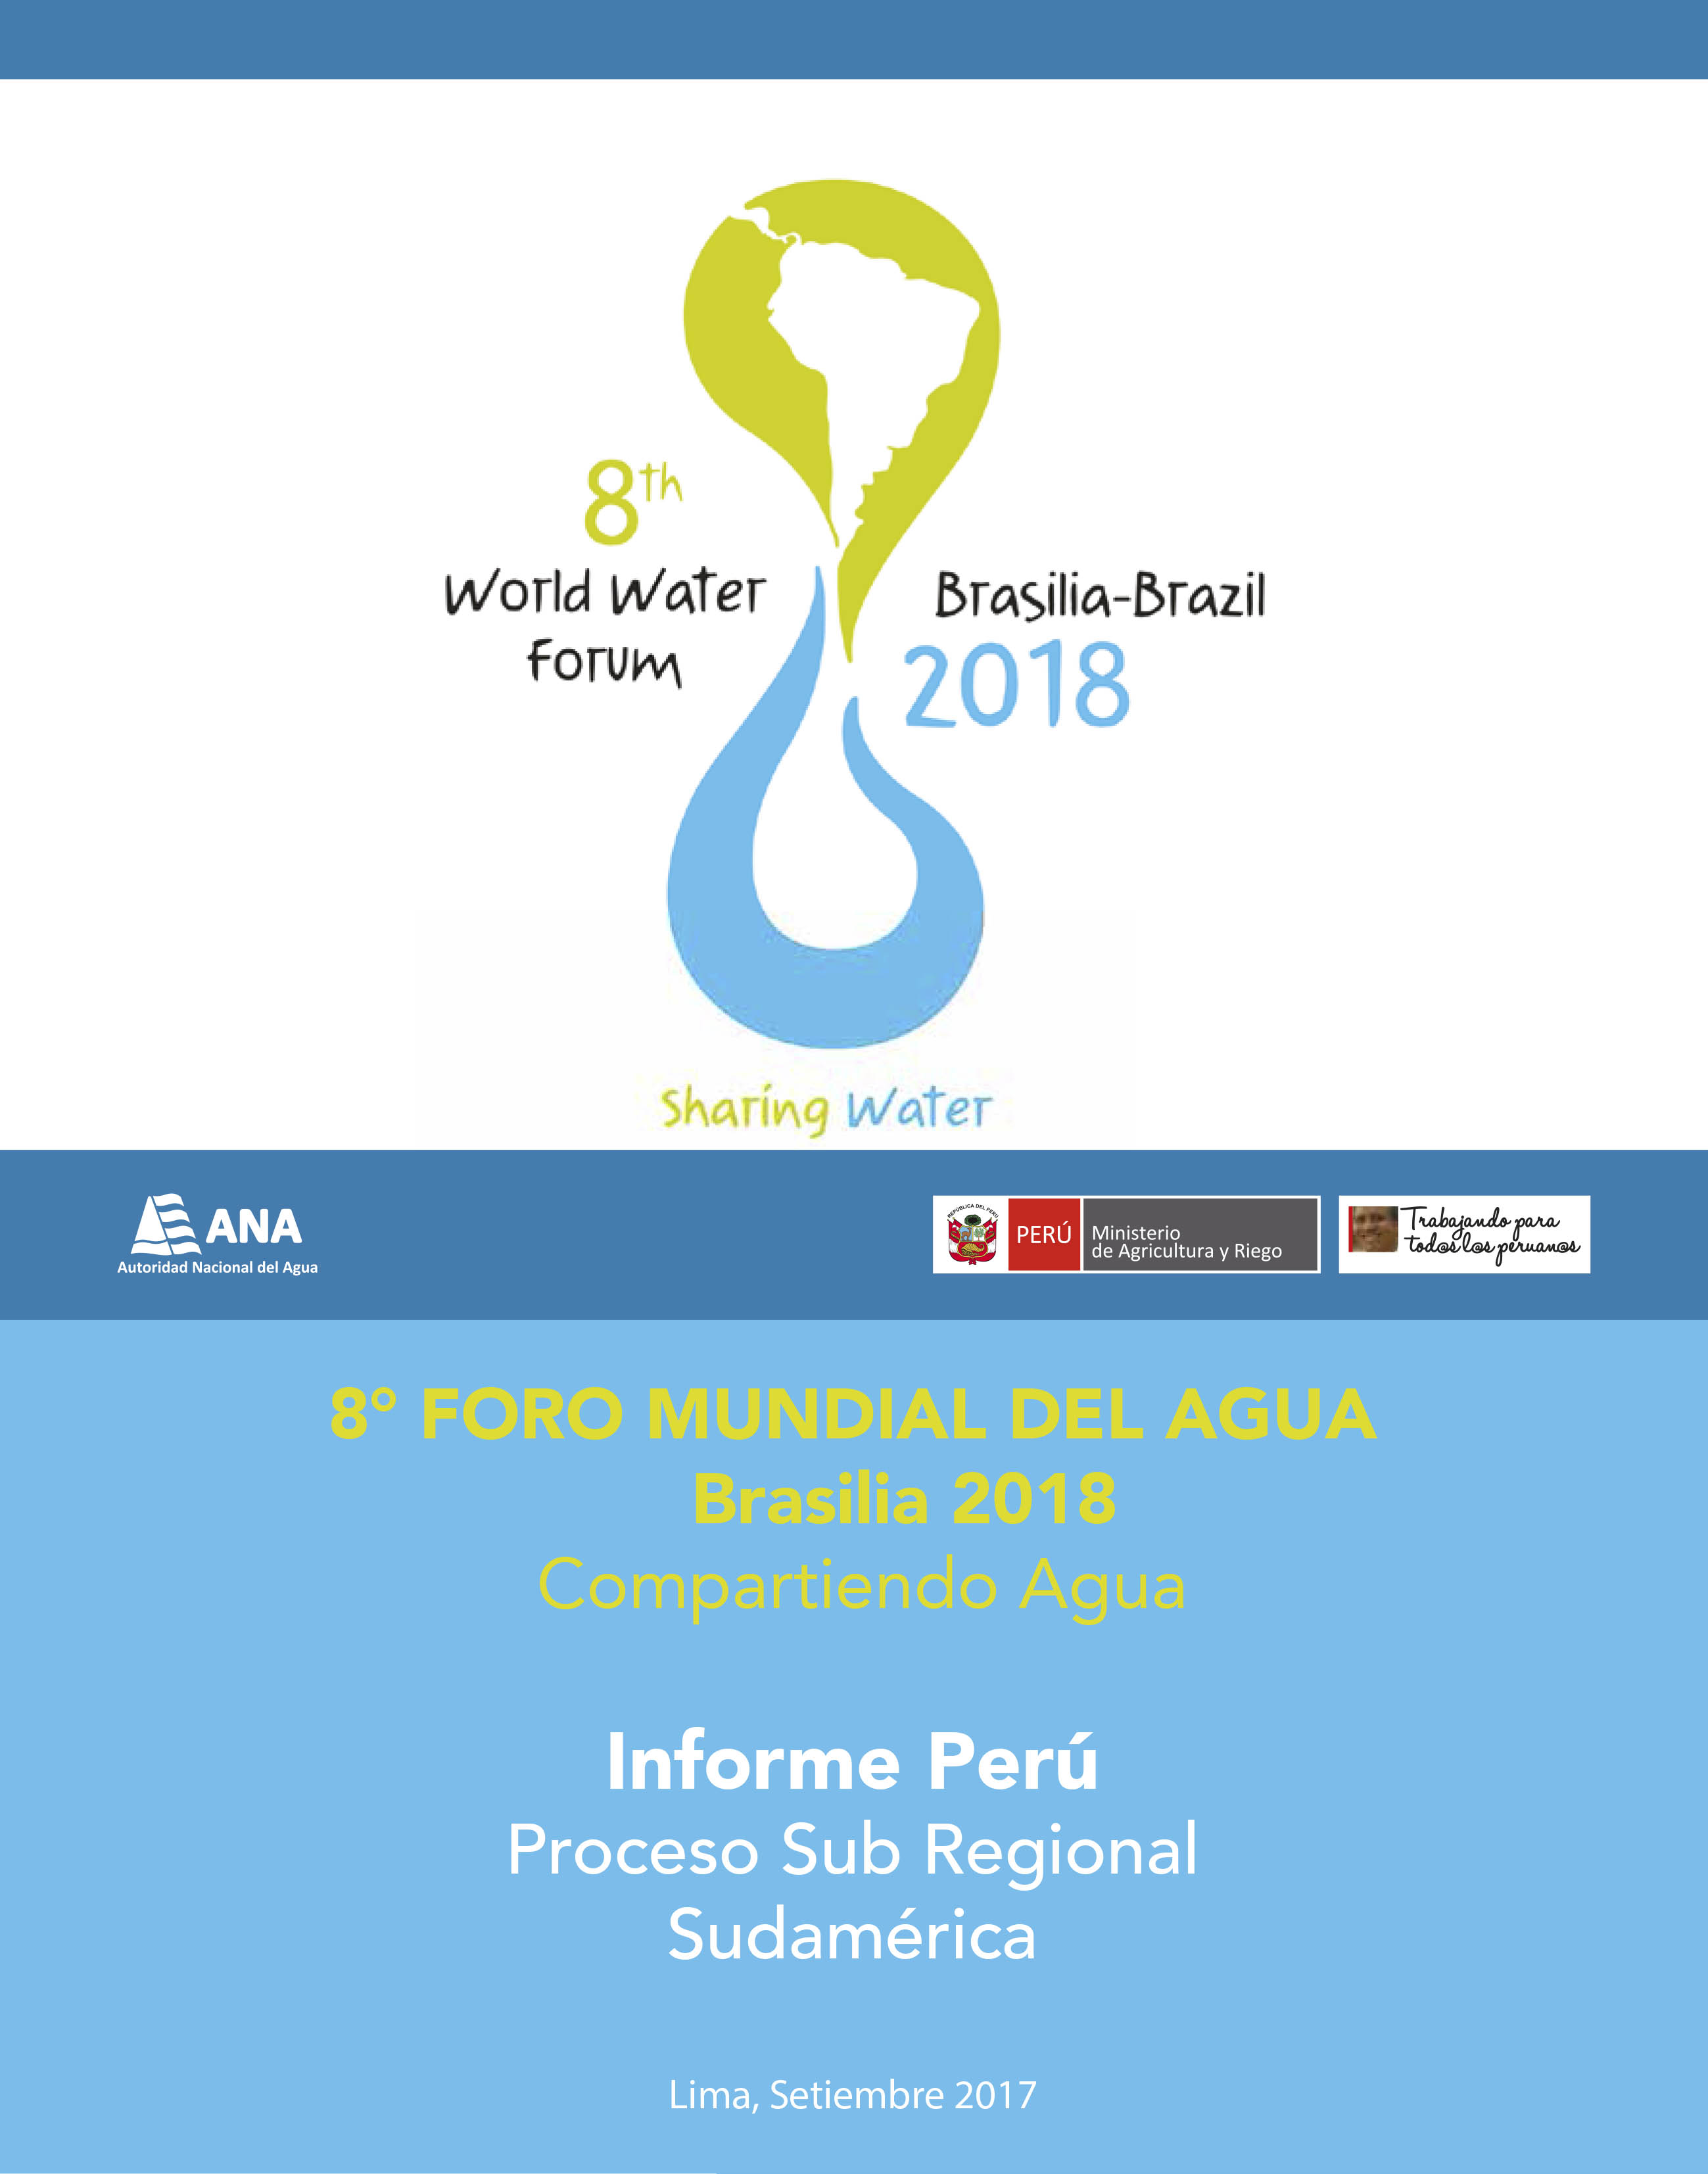 8° FORO MUNDIAL DEL AGUA - Brasilia 2018 - Informe Perú 